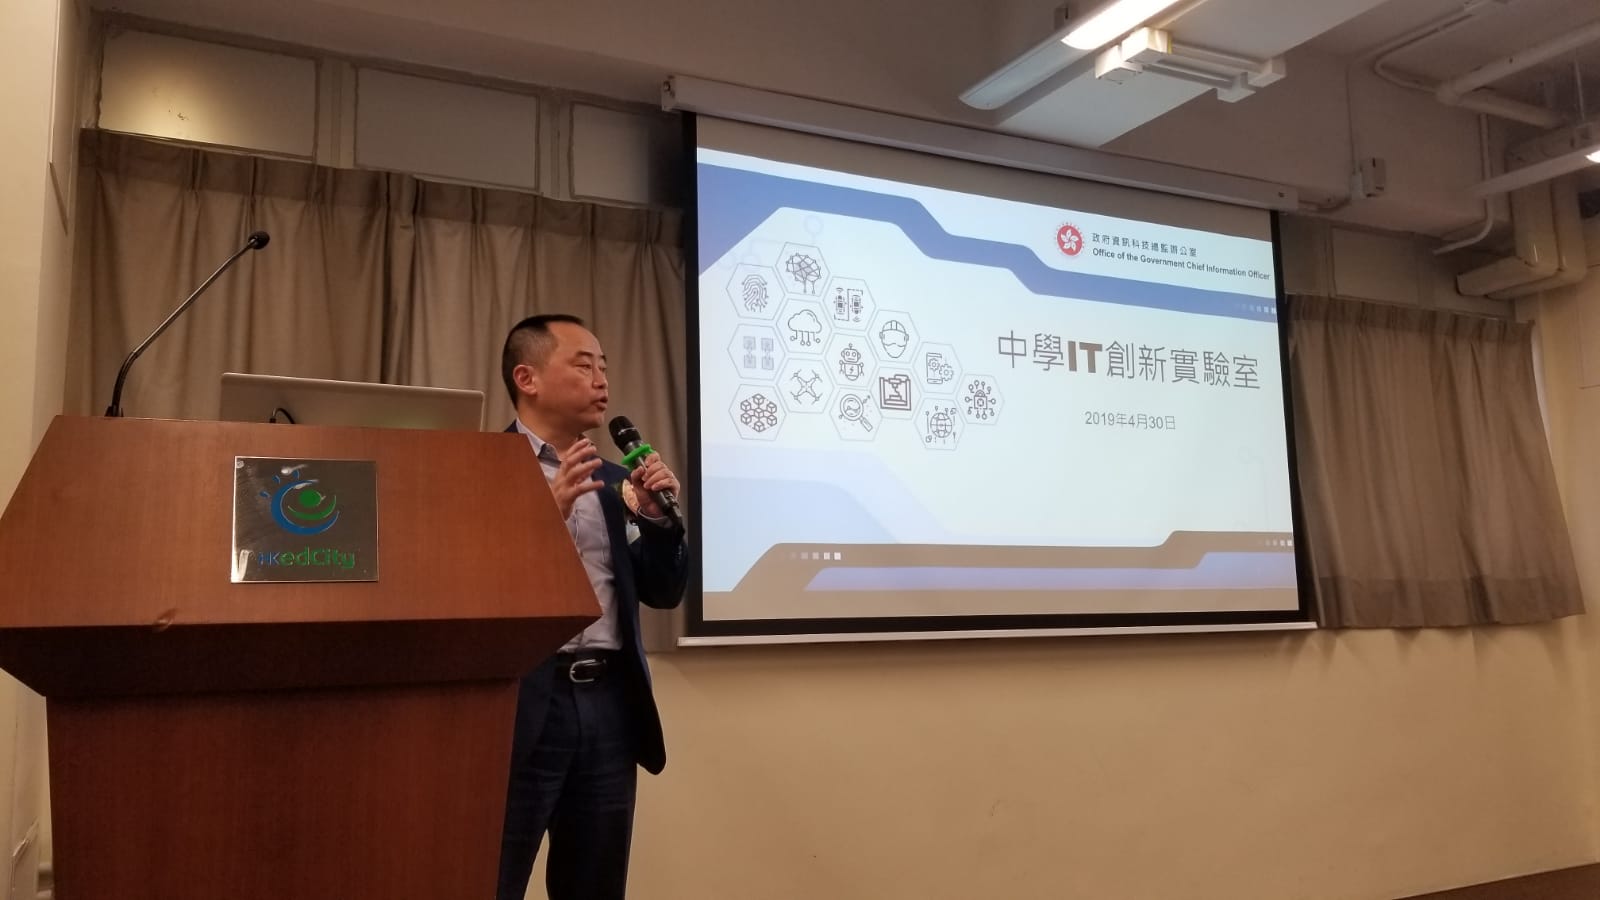 助理政府资讯科技总监（产业发展）黄志光先生向参加者简介「中学IT创新实验室」计划